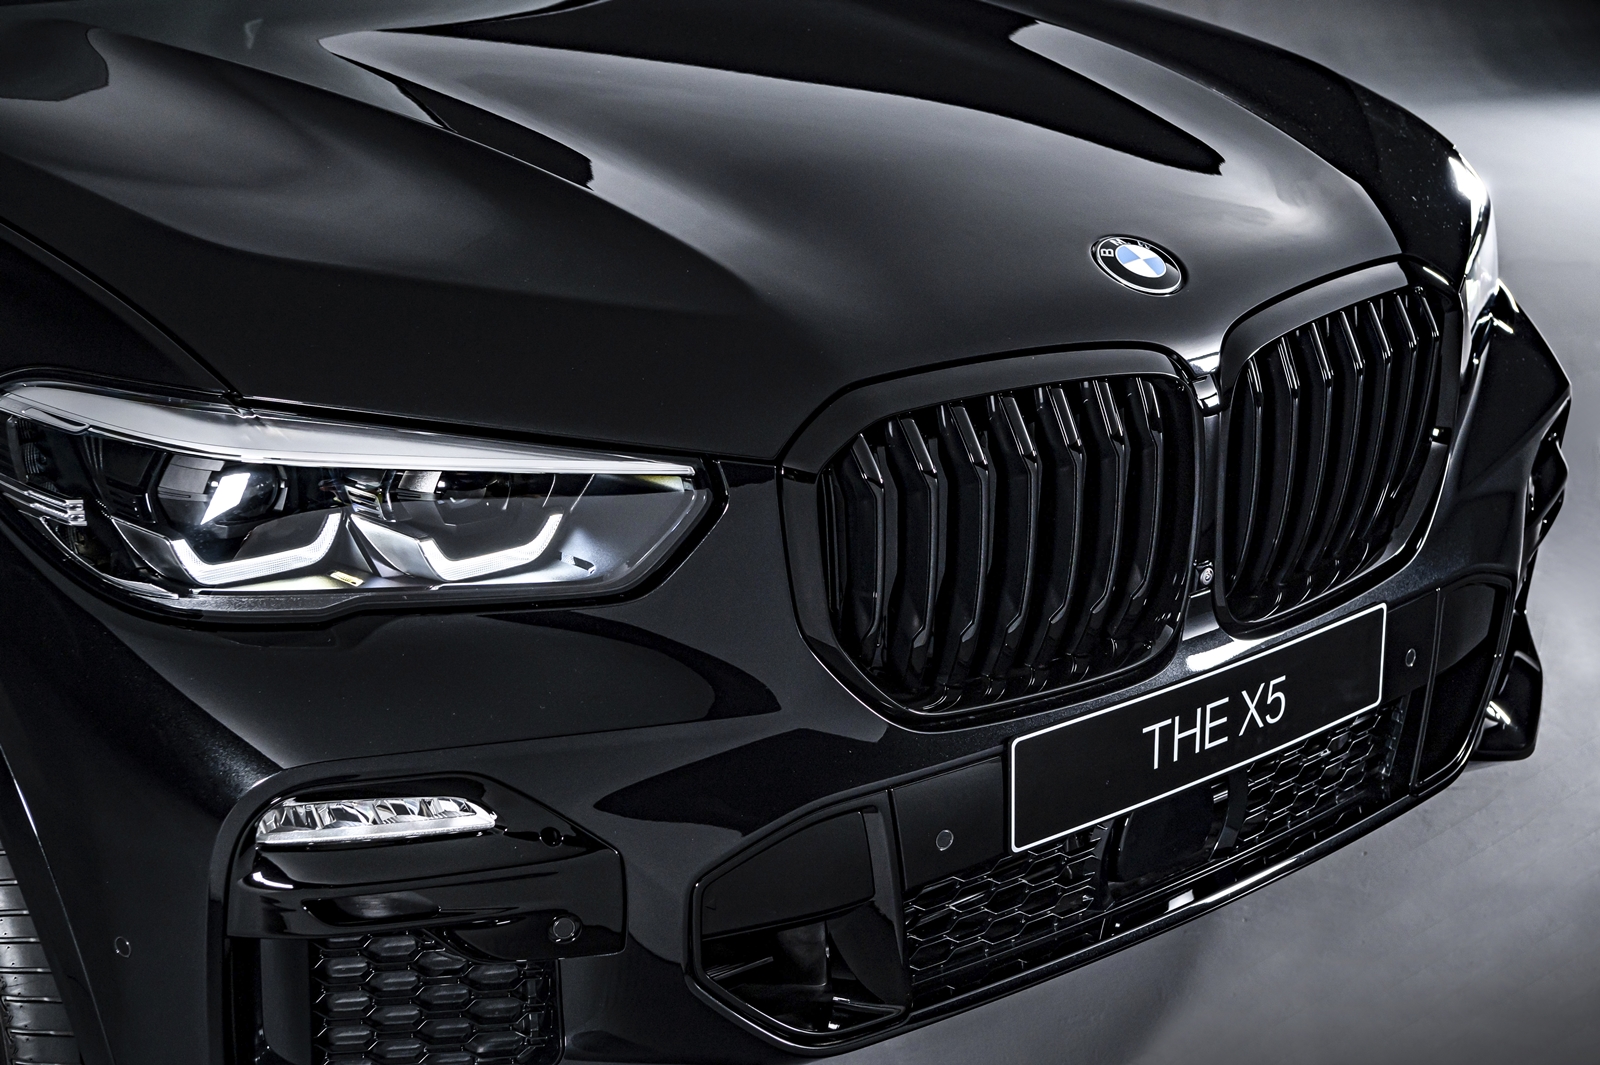 BMW X5 Dark Knight曜黑版採用一體化設計的黑色高光澤雙腎型水箱護罩。